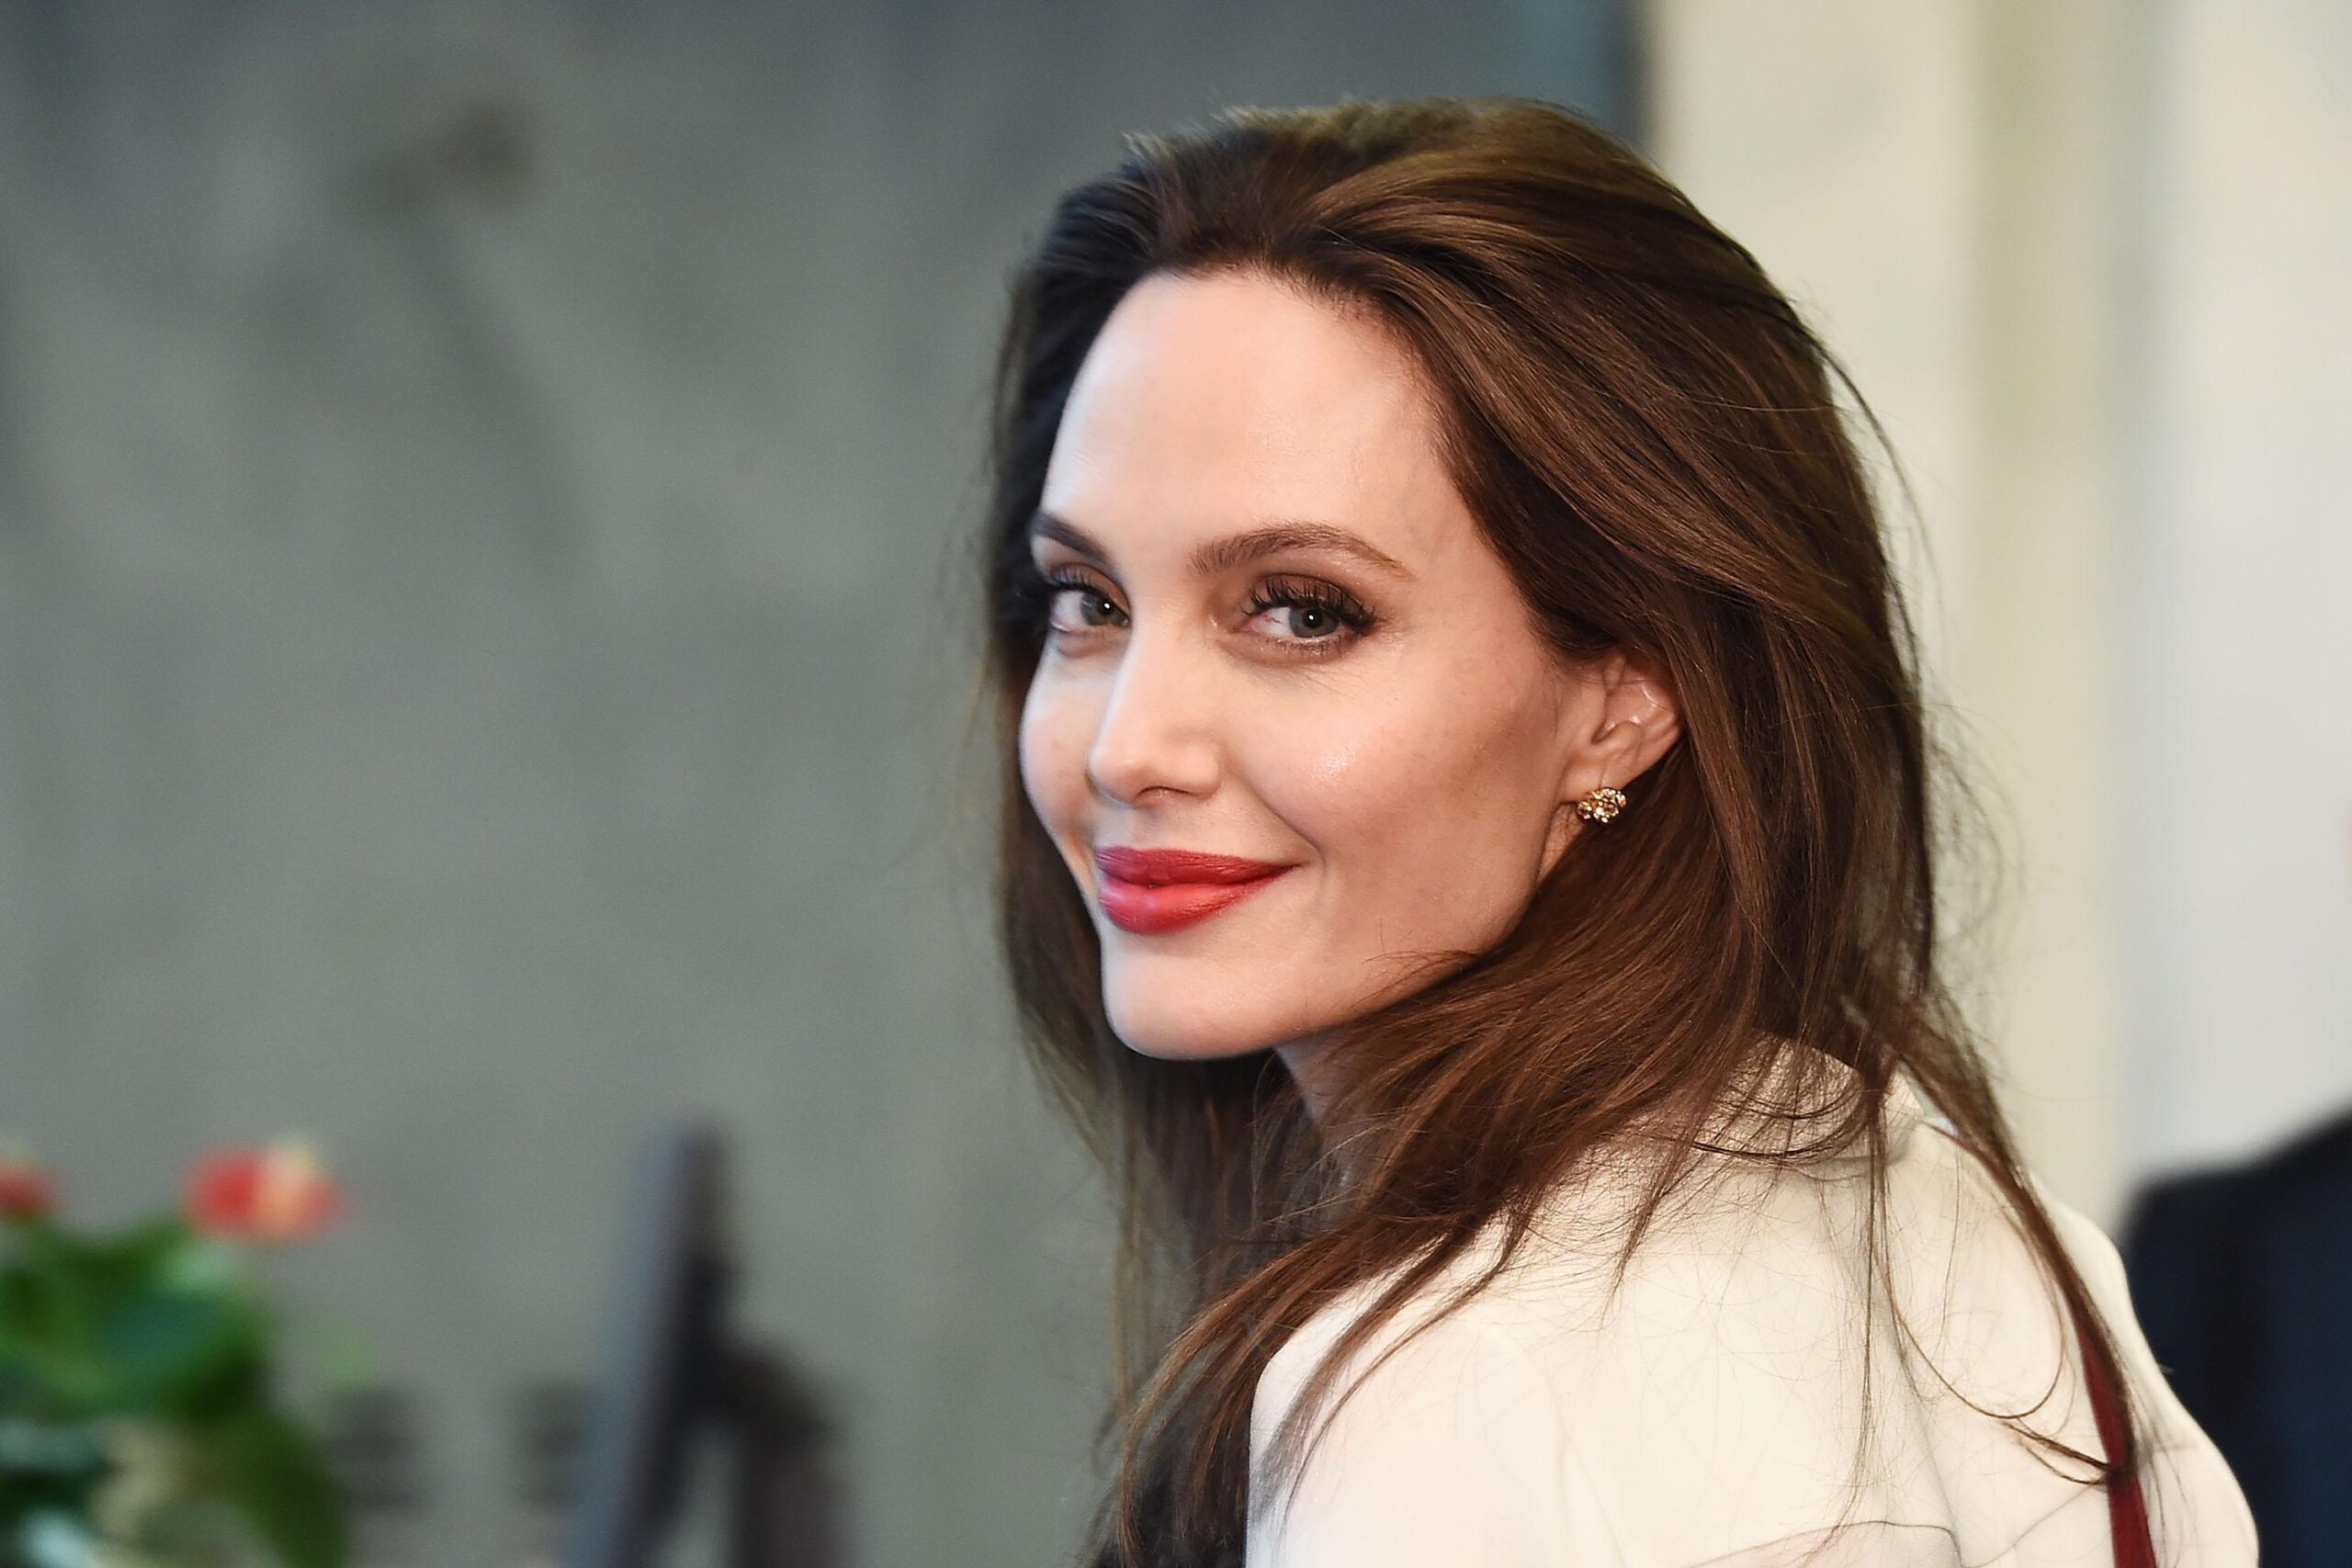 एंजेलिना जोली 4 जून, 1975) एक अमेरिकी अभिनेत्री, फिल्म निर्माता और मानवतावादी हैं । एक अकादमी पुरस्कार और तीन गोल्डन ग्लोब पुरस्कारों सहित कई प्रशंसाओं की प्राप्तकर्ता , उन्हें कई बार हॉलीवुड की सबसे अधिक भुगतान वाली अभिनेत्री का नाम दिया गया है। Angelina Jolie Biography in Hindi जोली ने लुकिंग टू गेट आउट (1982) में  अपने पिता, जॉन वोइट के साथ एक बच्चे के रूप में स्क्रीन पर शुरुआत की, और एक दशक बाद कम बजट के प्रोडक्शन साइबोर्ग 2 (1993) के साथ उनके फिल्मी करियर की शुरुआत हुई, उसके बाद उन्होंने हैकर्स (1995) में एक प्रमुख फिल्म में पहली प्रमुख भूमिका । उन्होंने जीवनी टेलीविजन फिल्मों जॉर्ज वालेस (1997) और जिया (1998) में अभिनय किया और 1999 की ड्रामा गर्ल, इंटरप्टेड में अपने प्रदर्शन के लिए सर्वश्रेष्ठ सहायक अभिनेत्री का अकादमी पुरस्कार जीता ।  लारा क्रॉफ्ट: टॉम्ब रेडर में  टाइटैनिक वीडियो गेम नायिका के रूप में उनकी अभिनीत भूमिका(2001) ने उन्हें एक प्रमुख हॉलीवुड अभिनेत्री के रूप में स्थापित किया। उन्होंने मिस्टर एंड मिसेज स्मिथ (2005), वांटेड (2008), साल्ट (2010) और द टूरिस्ट (2010) के साथ अपने एक्शन-स्टार करियर को जारी रखा , और ड्रामा ए माइटी हार्ट (2007) में उनके प्रदर्शन के लिए आलोचनात्मक प्रशंसा प्राप्त की। ) और चेंजलिंग (2008); उत्तरार्द्ध ने उन्हें सर्वश्रेष्ठ अभिनेत्री के लिए अकादमी पुरस्कार के लिए नामांकित किया ।  उनकी सबसे बड़ी व्यावसायिक सफलताओं में फंतासी चित्र मेलफिकेंट (2014), इसकी 2019 की अगली कड़ी और सुपरहीरो फिल्म इटर्नल्स (2021) शामिल हैं। उन्होंने एनीमेशन फिल्म श्रृंखला कुंग फू पांडा में एक आवाज की भूमिका निभाई है2008 से। जोली ने वॉर ड्रामा इन द लैंड ऑफ ब्लड एंड हनी (2011), अनब्रोकन (2014), और फर्स्ट दे किल्ड माई फादर (2017) का निर्देशन और लेखन भी किया है। जोली को उनके मानवीय प्रयासों के लिए जाना जाता है, जिसके लिए उन्हें अन्य सम्मानों के साथ-साथ एक जीन हेर्शोल्ट मानवतावादी पुरस्कार प्राप्त हुआ और उन्हें मानद डेम कमांडर ऑफ द ऑर्डर ऑफ सेंट माइकल एंड सेंट जॉर्ज बनाया गया। वह संरक्षण , शिक्षा और महिलाओं के अधिकारों सहित विभिन्न कारणों को बढ़ावा देती हैं , और शरणार्थियों के लिए संयुक्त राष्ट्र के उच्चायुक्त के लिए एक विशेष दूत के रूप में शरणार्थियों की ओर से उनकी वकालत के लिए सबसे प्रसिद्ध हैं , एक स्थिति जो उन्होंने 2022 तक संभाली थी। शरणार्थी शिविरों और युद्ध क्षेत्रों के लिए विश्व स्तर पर दर्जन भर फील्ड मिशन ; उनके दौरे वाले देशों में कंबोडिया, सिएरा लियोन, तंजानिया, पाकिस्तान, अफगानिस्तान, सीरिया, सूडान, यमन और यूक्रेन शामिल हैं। एक सार्वजनिक शख्सियत के रूप में, जोली को अमेरिकी मनोरंजन उद्योग में सबसे शक्तिशाली और प्रभावशाली लोगों में से एक के रूप में उद्धृत किया गया है। उन्हें विभिन्न मीडिया आउटलेट्स द्वारा दुनिया की सबसे खूबसूरत महिला के रूप में उद्धृत किया गया है। उनके रिश्तों, विवाह और स्वास्थ्य सहित उनका निजी जीवन व्यापक प्रचार का विषय रहा है। उनका अभिनेता जॉनी ली मिलर , बिली बॉब थॉर्नटन और ब्रैड पिट से तलाक हो गया है । पिट के साथ उसके छह बच्चे हैं, जिनमें से तीन को अंतरराष्ट्रीय स्तर पर गोद लिया गया था। Angelina Jolie Biography in Hindi 